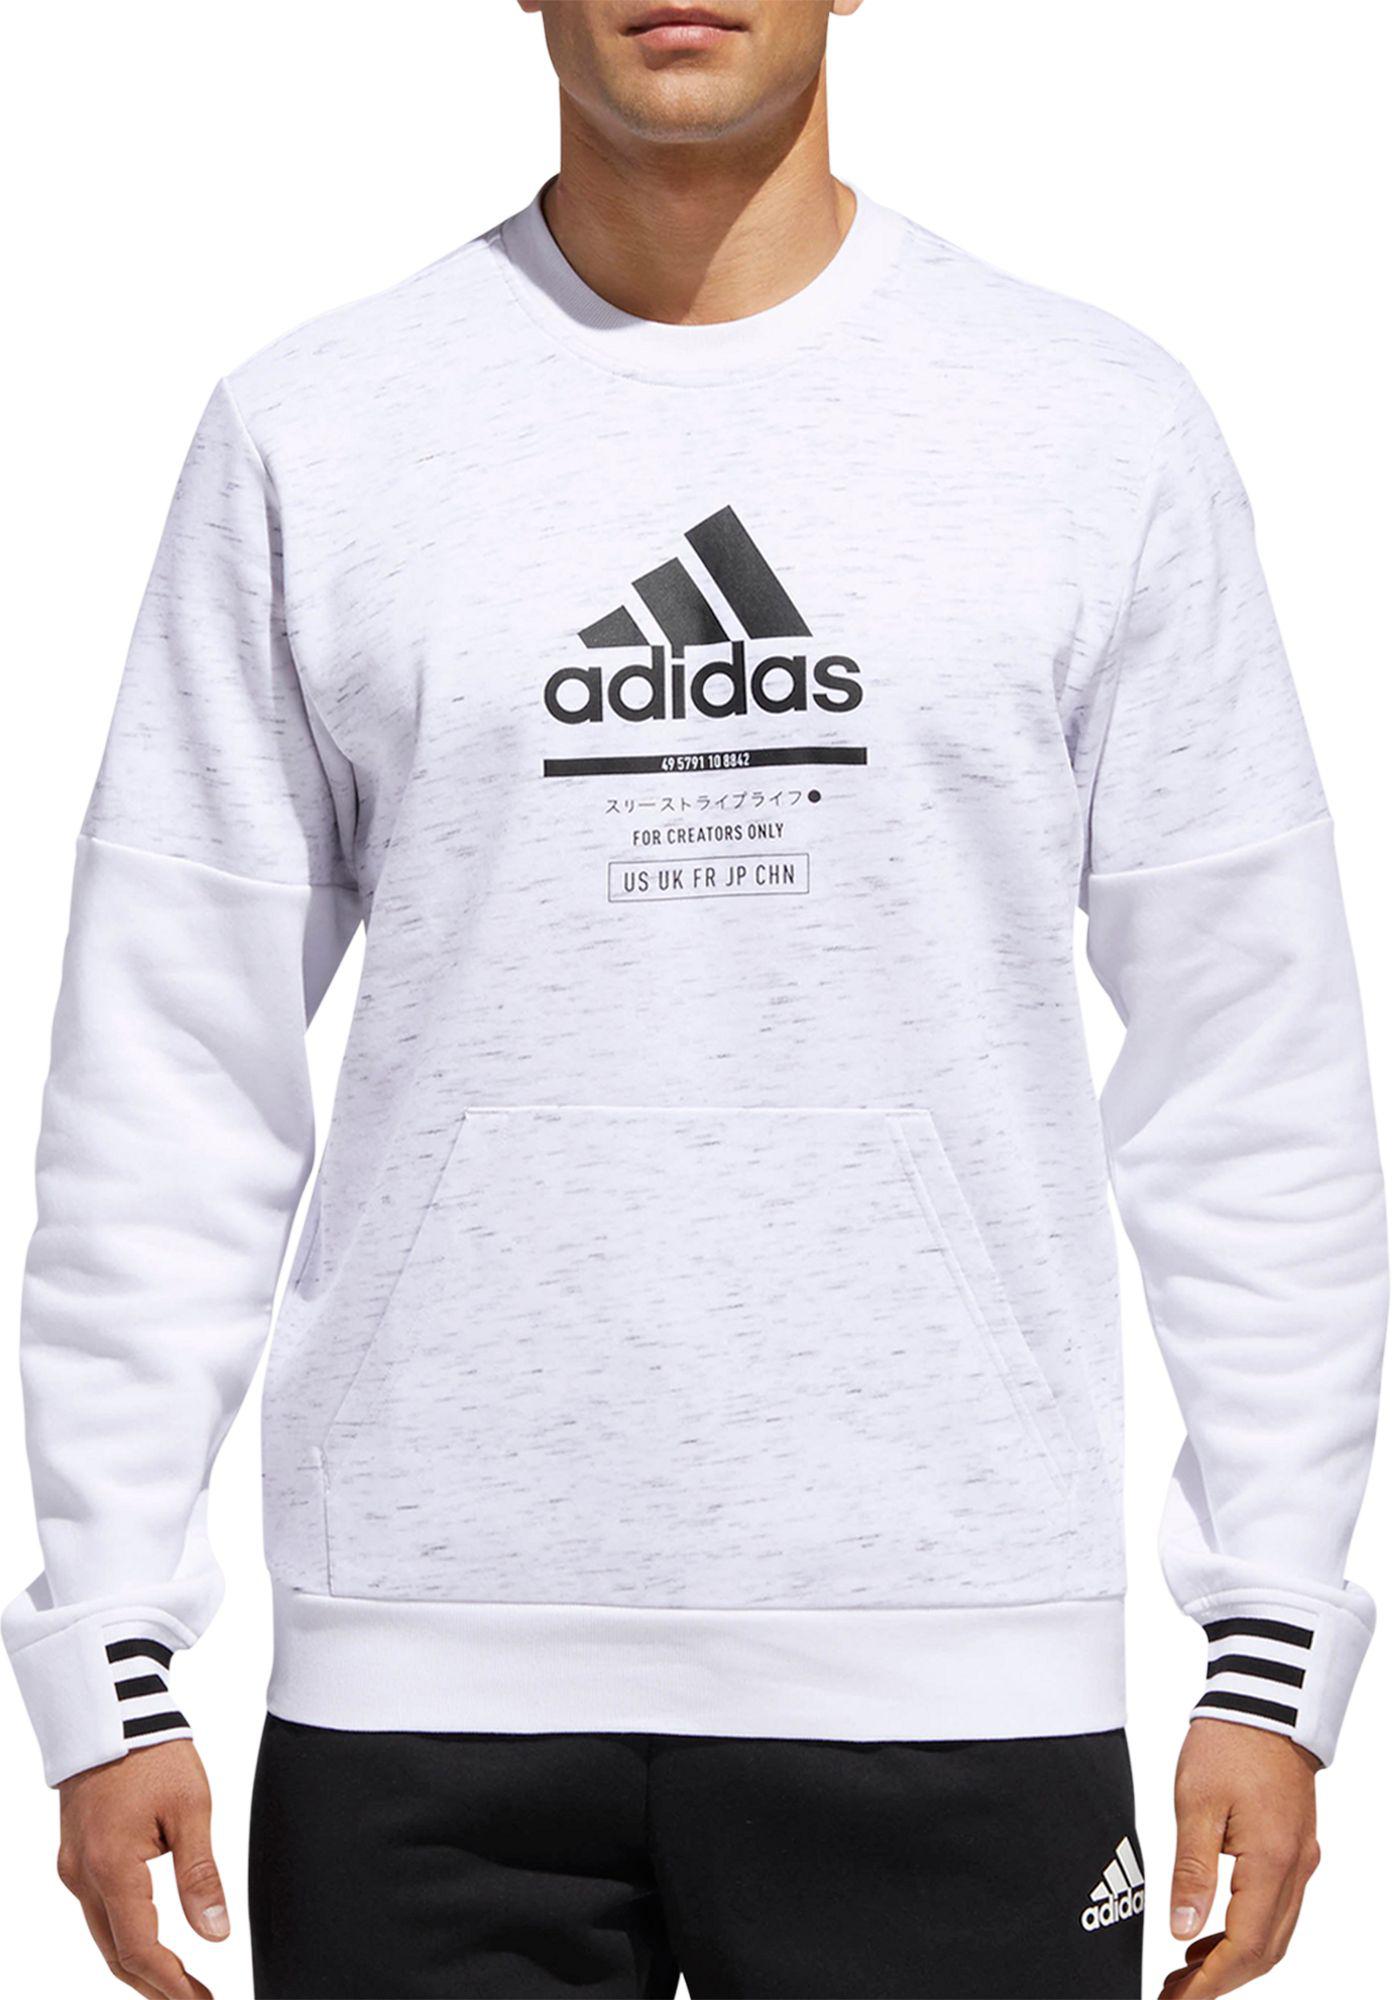 adidas men's post game crew sweatshirt